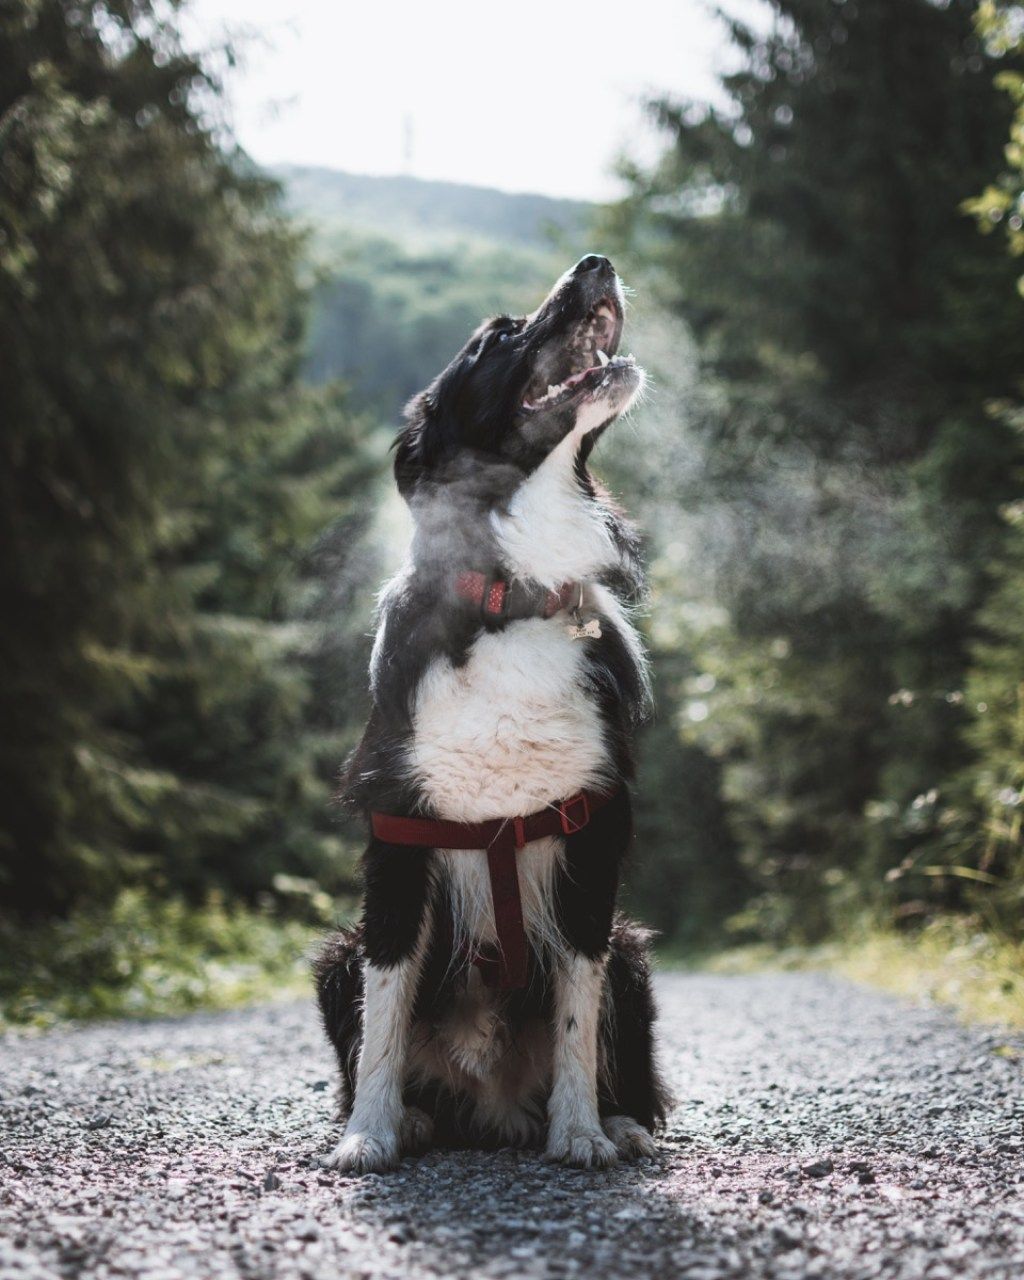 آسمانی چیزوں کی طرف دیکھتے ہوئے کتا آپ کو کبھی معلوم نہیں تھا کہ کتے کر سکتے ہیں